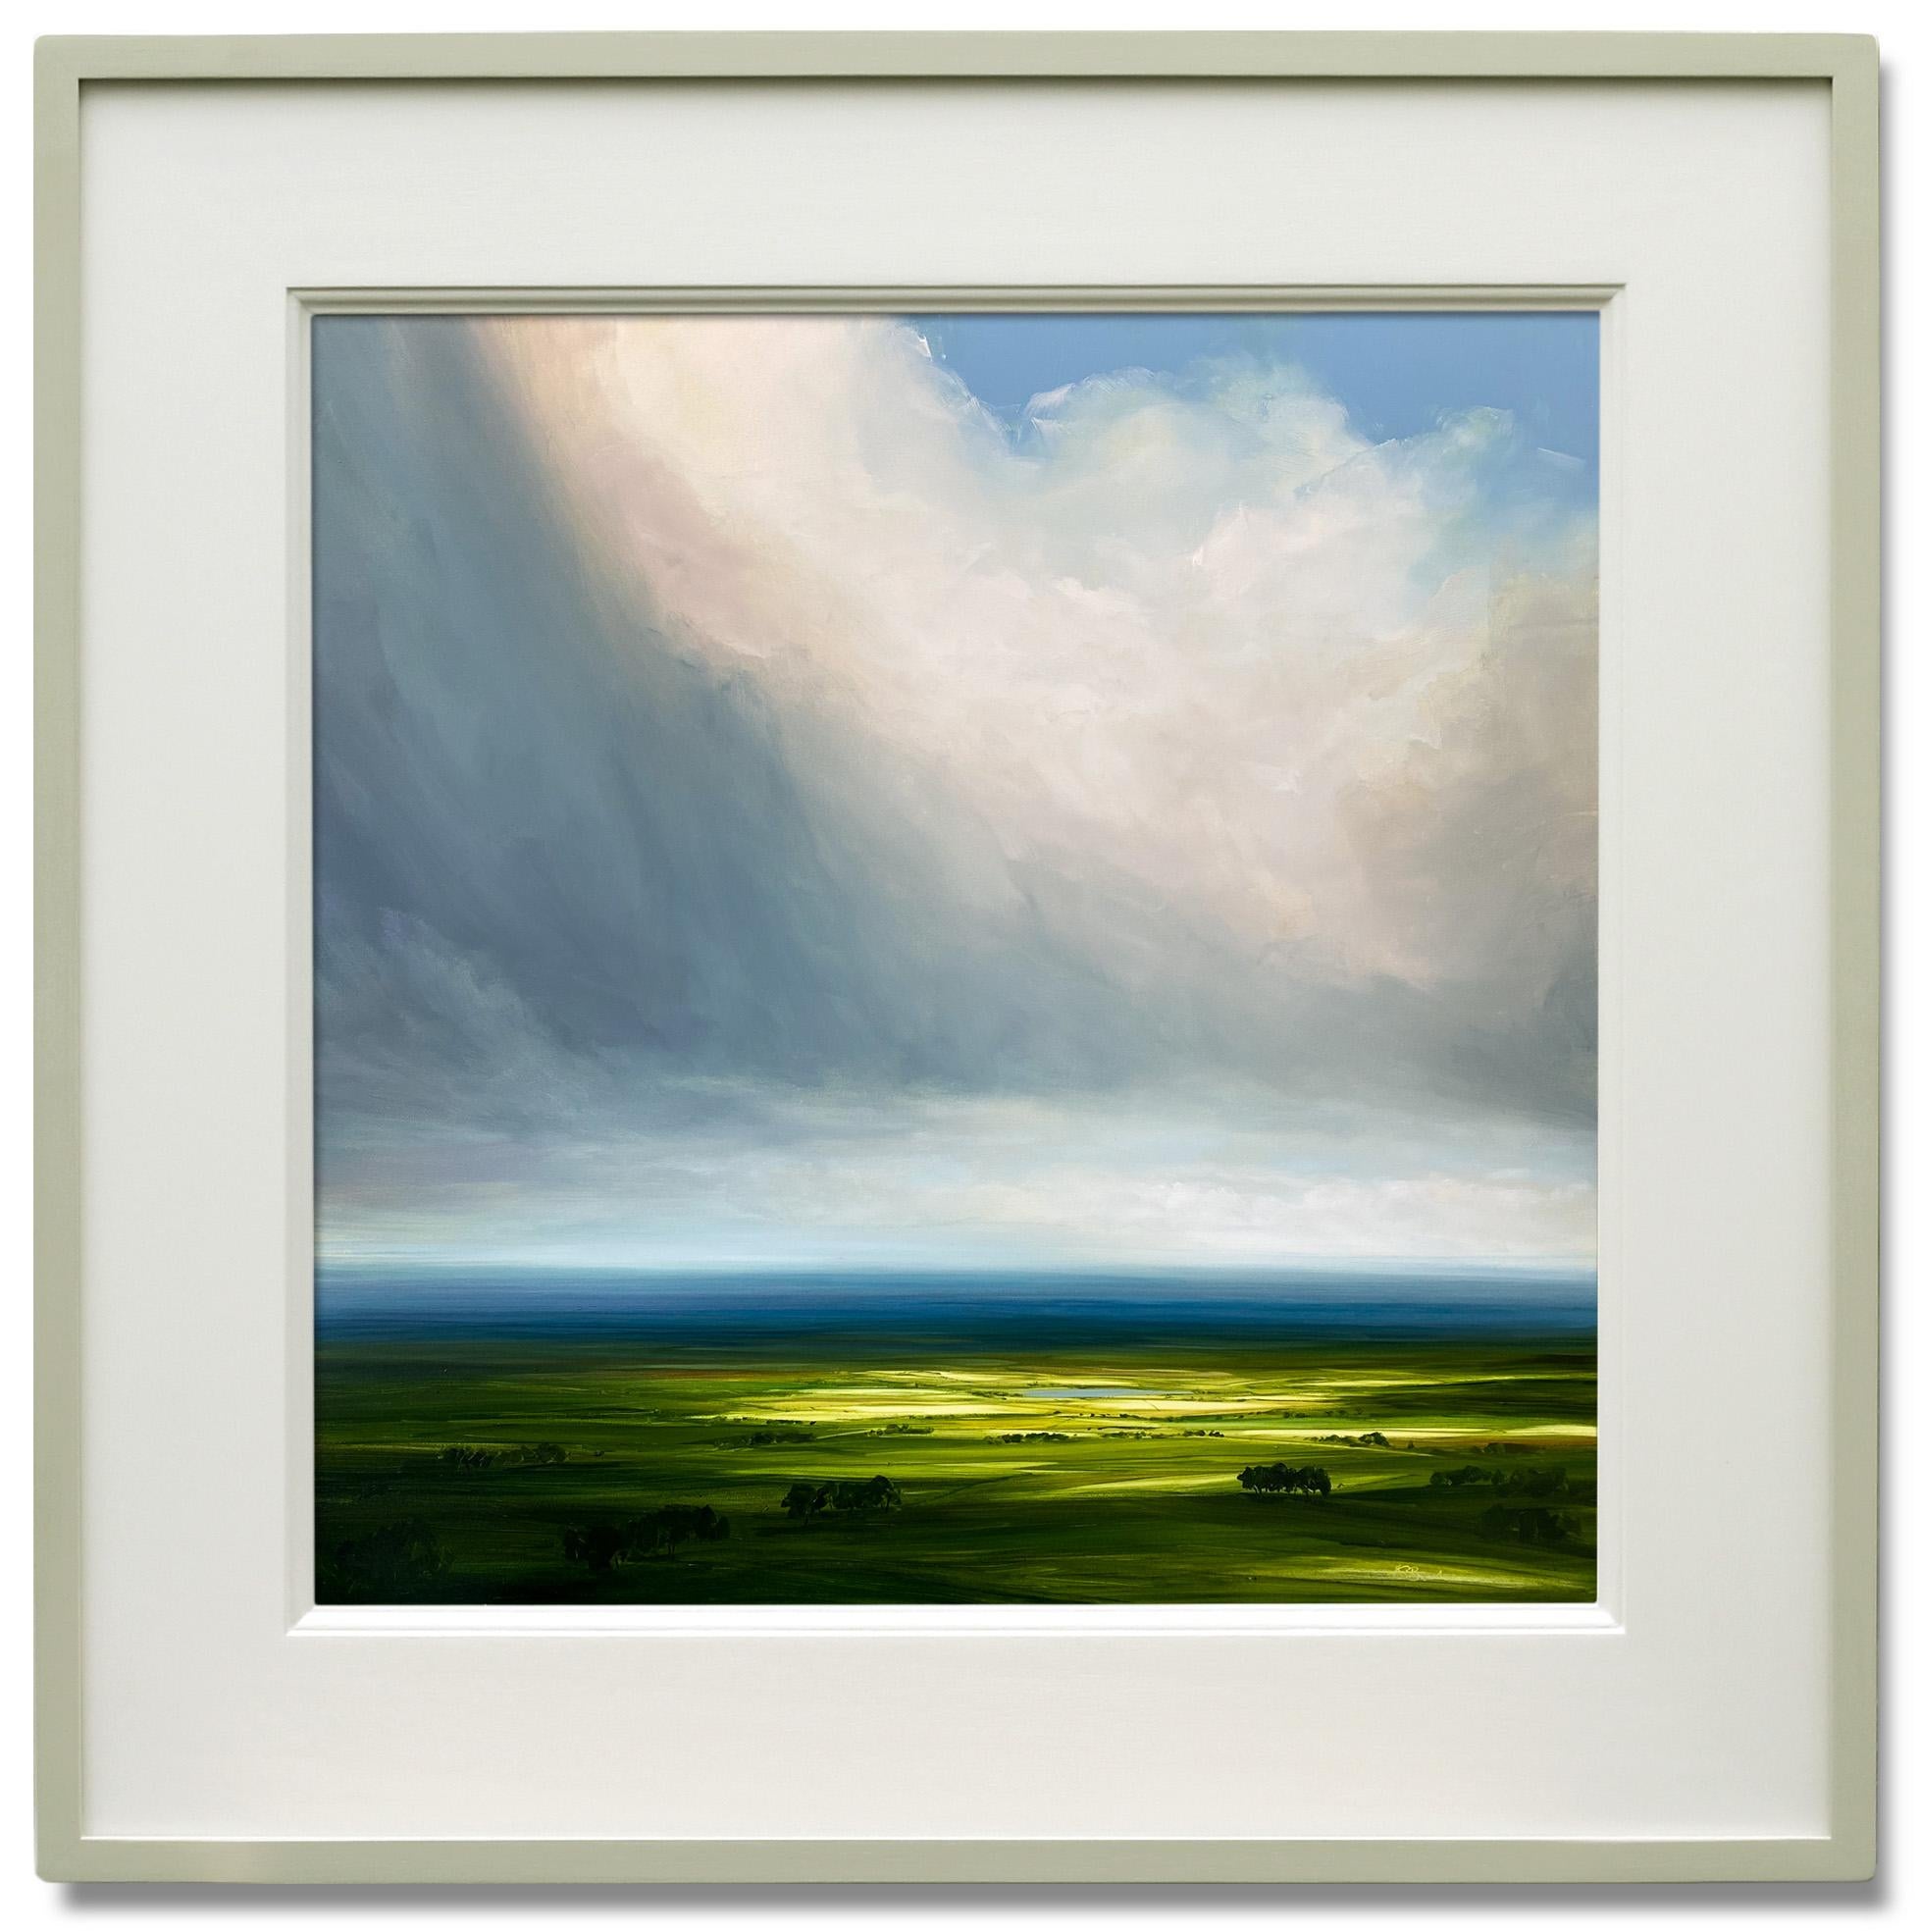 Harry Brioche Landscape Painting – Verweilender Frühling 1-originale impressionistische Landschaftsmalerei- Contemporary ART